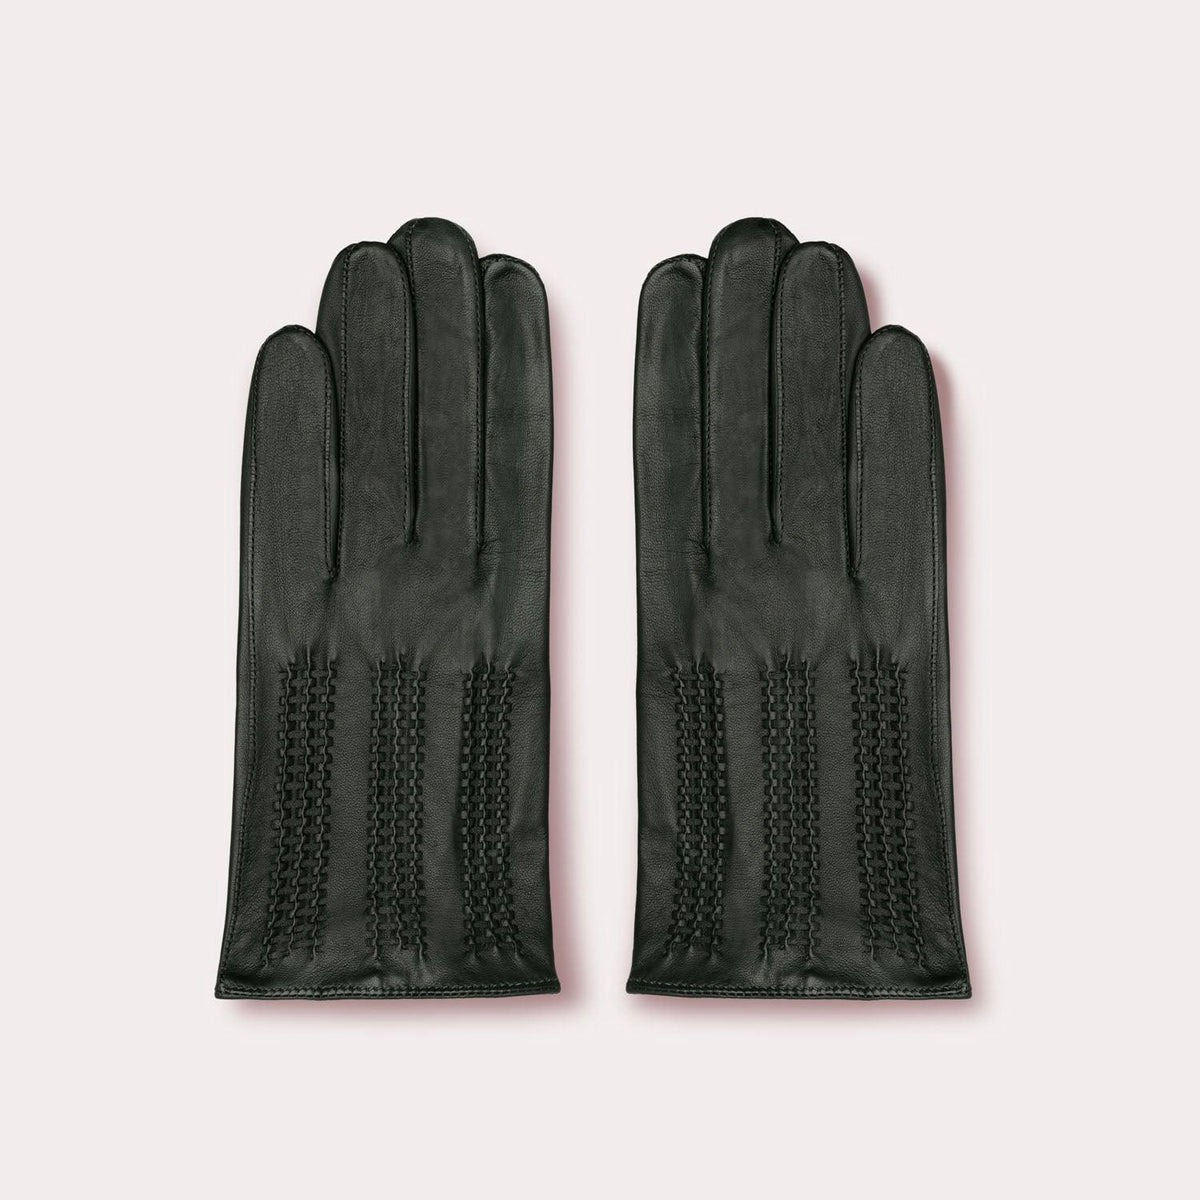 Men's Traveler Glove in Agave